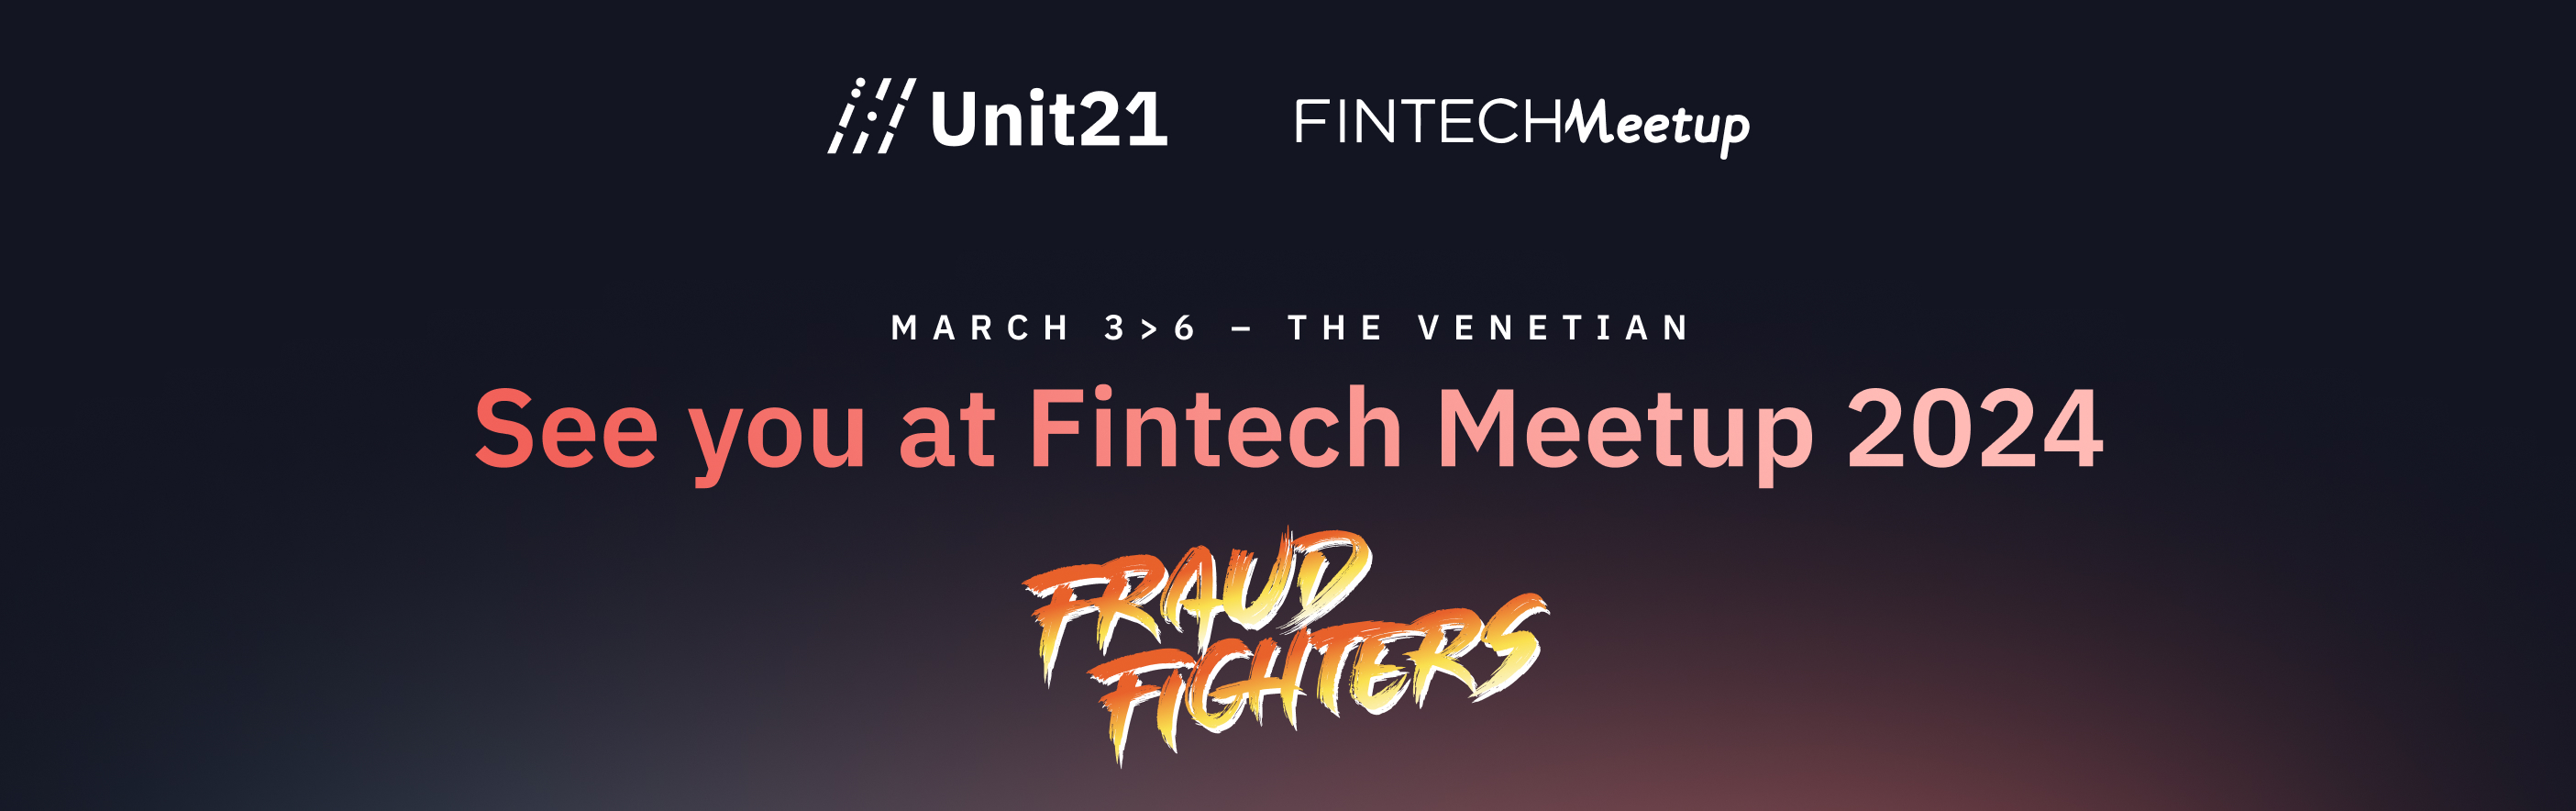 Unit21 at Fintech Meetup 2024